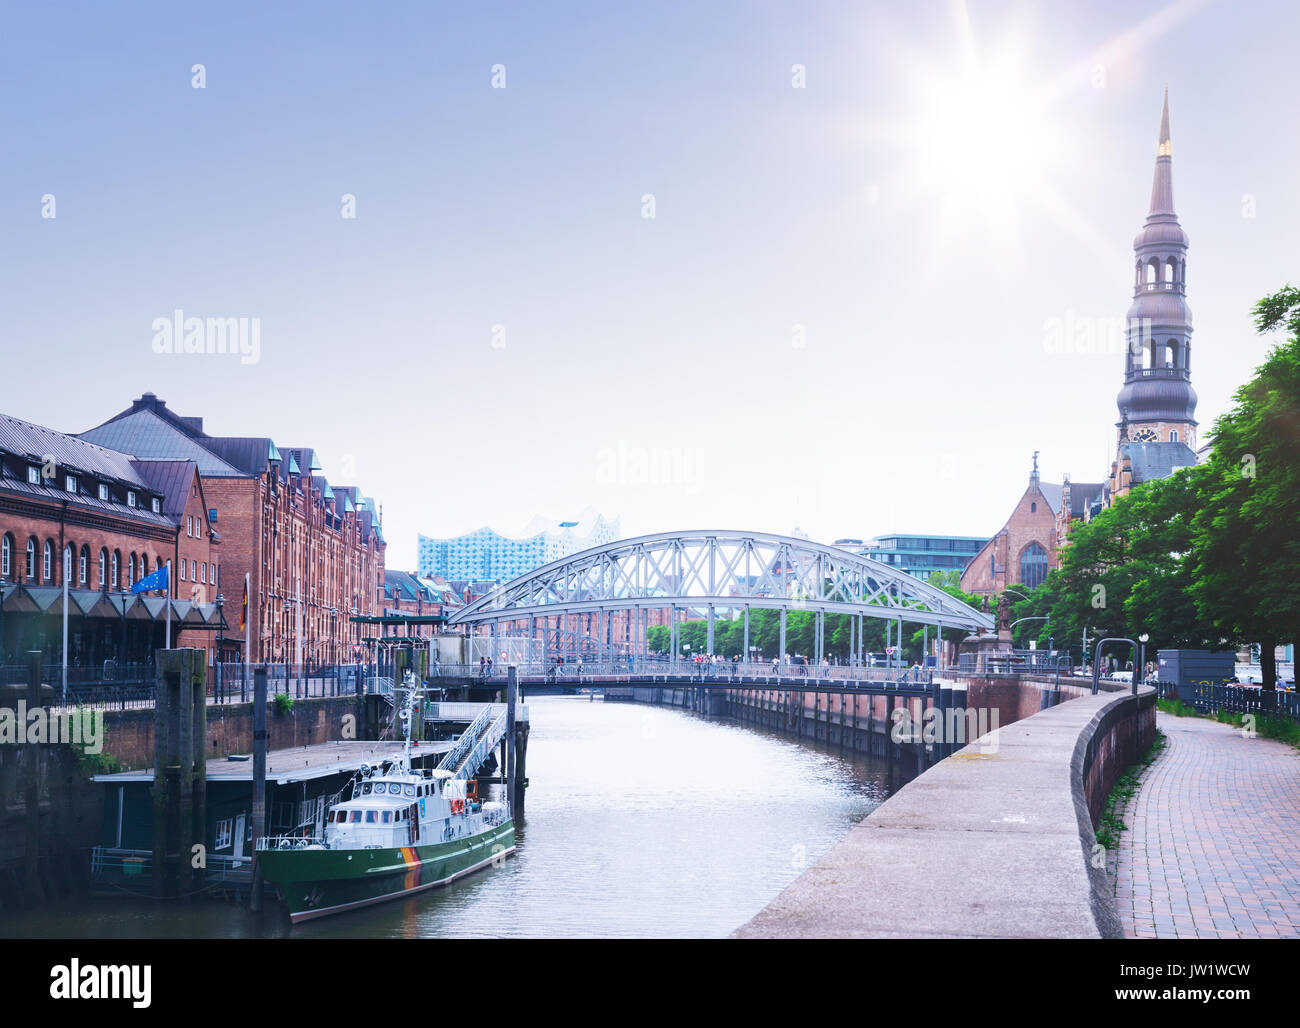 Speicherstadt Speicherstadt in Hamburg über Zollkanal Kanal gesehen mit der Elbphilharmonie im Hintergrund Stockfoto